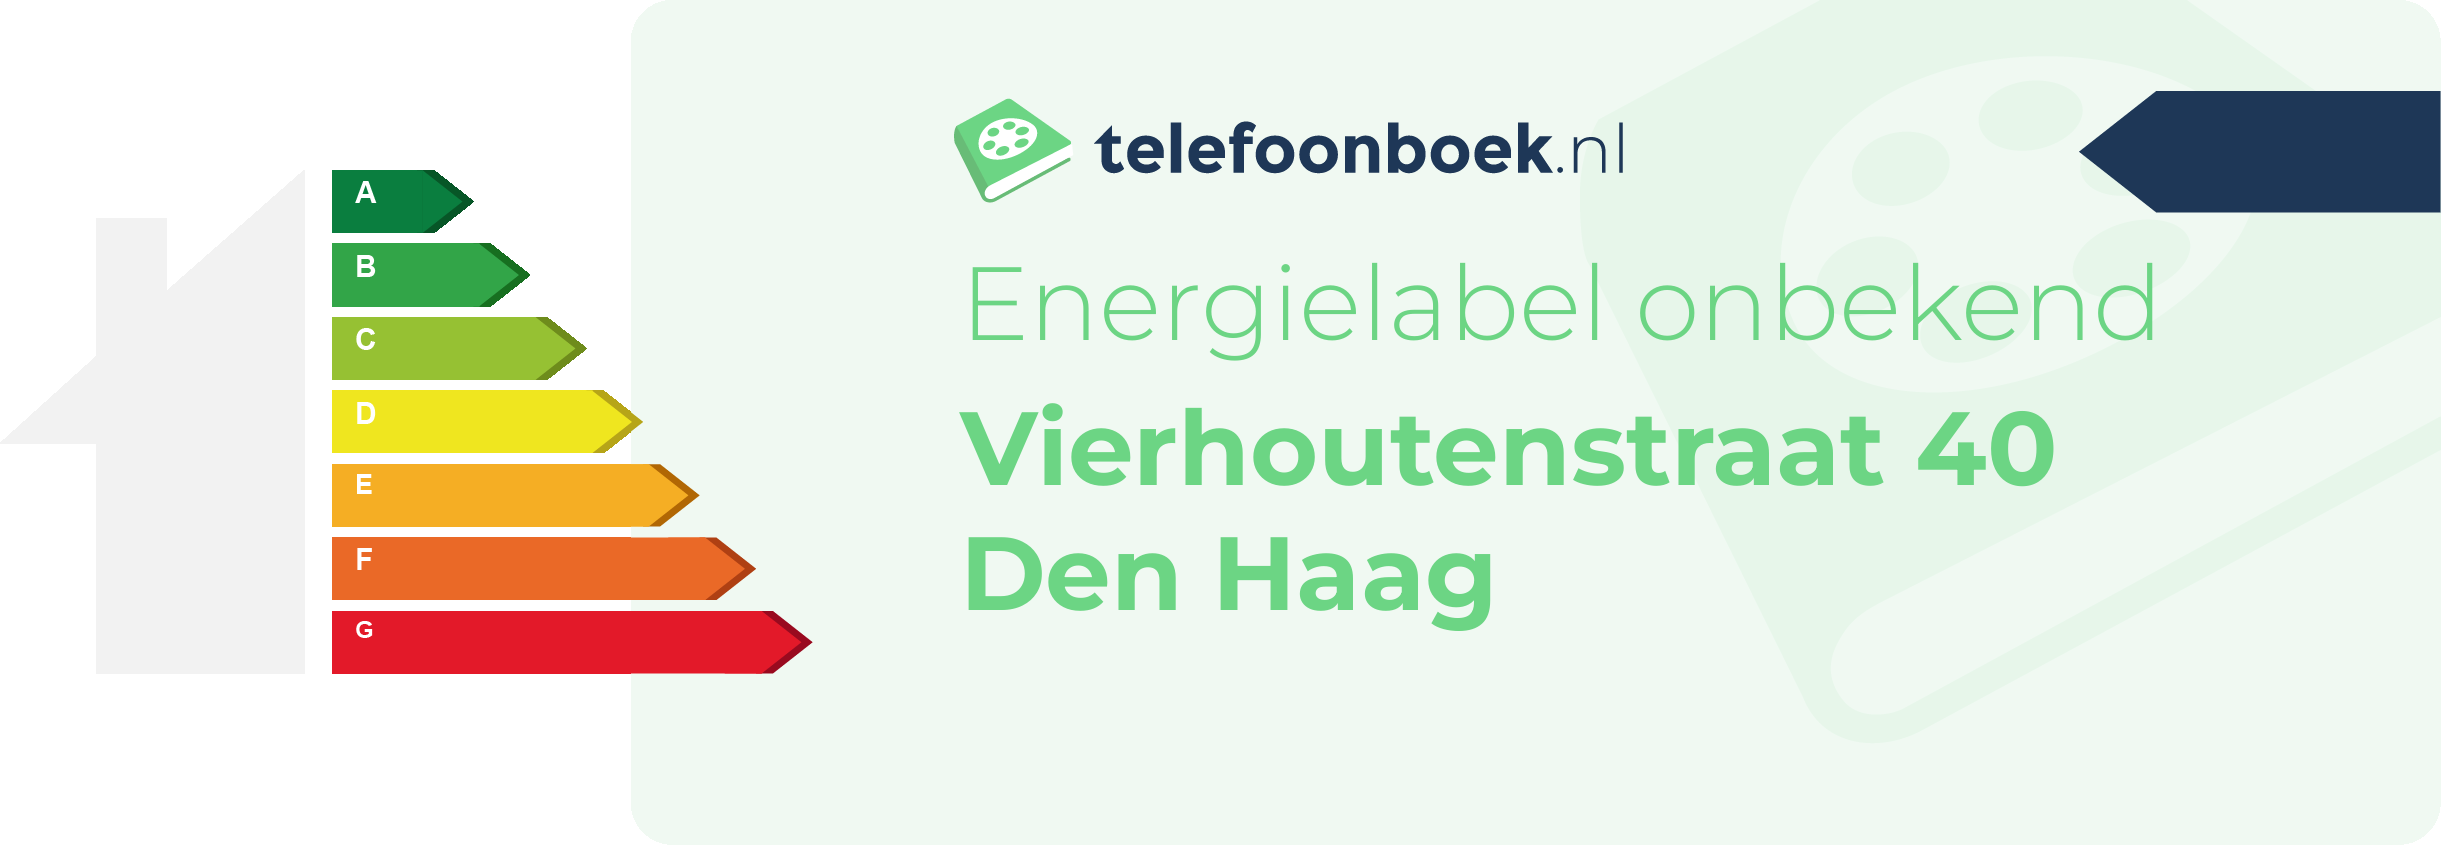 Energielabel Vierhoutenstraat 40 Den Haag